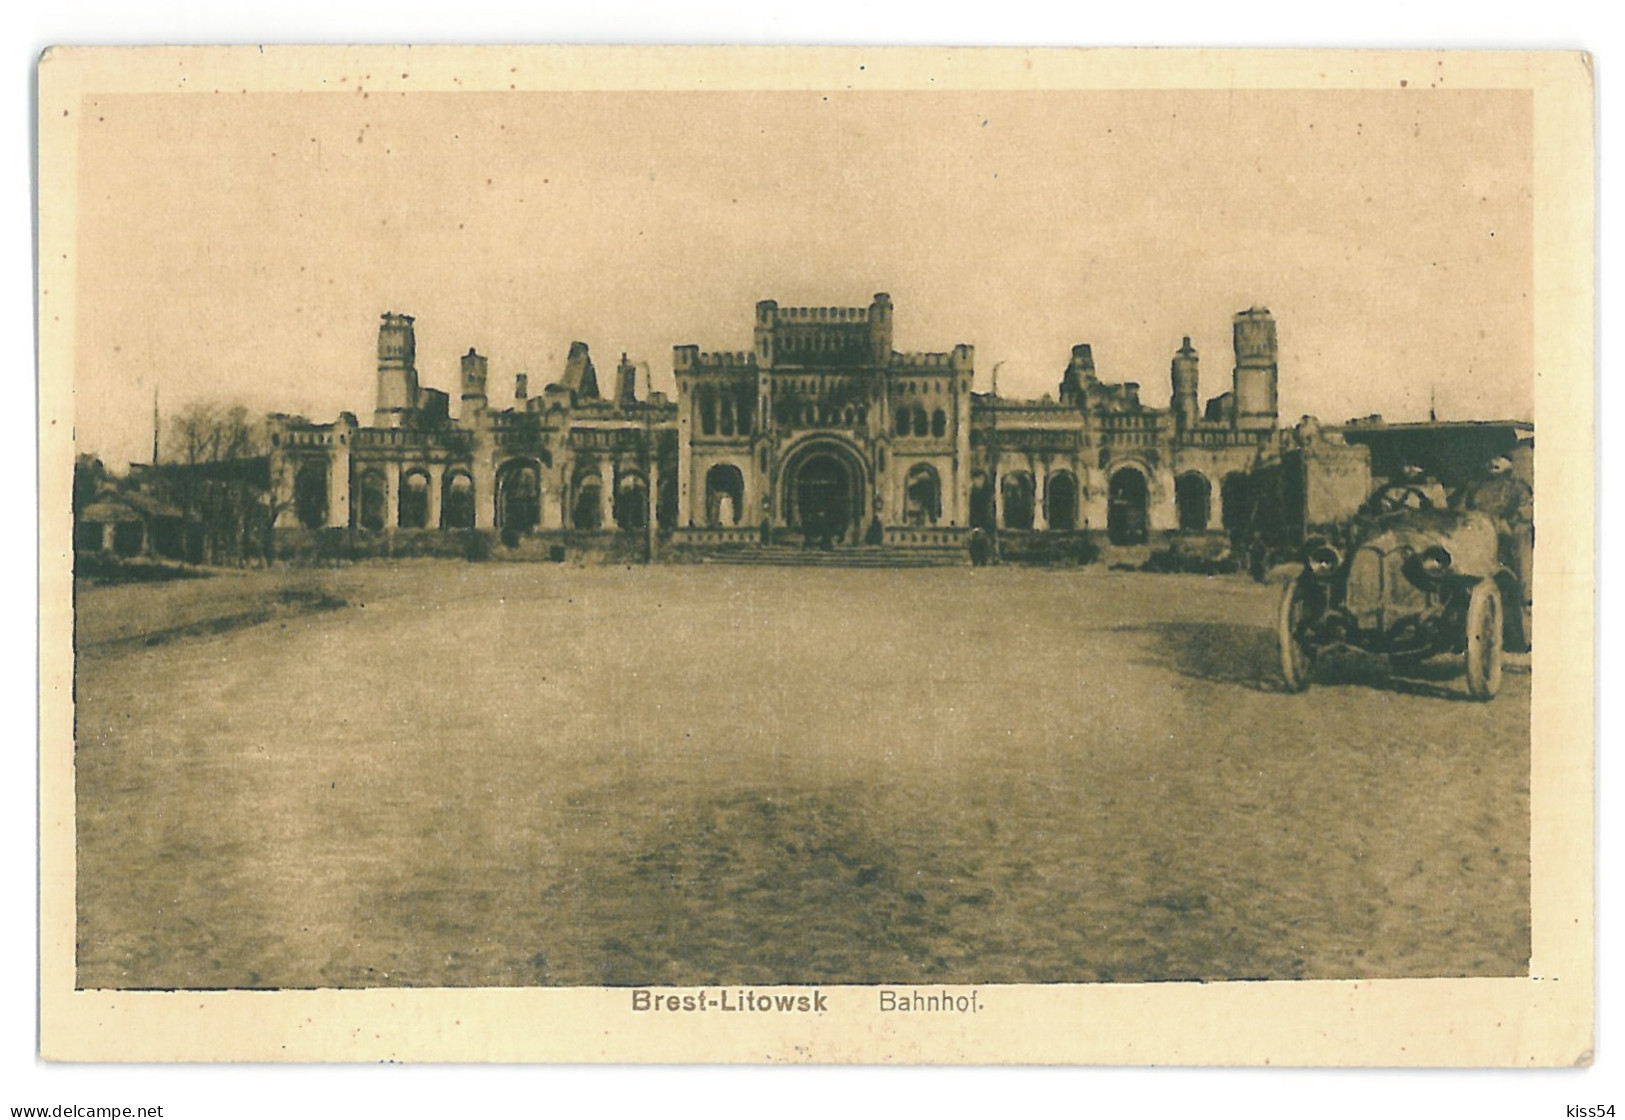 BL 28 - 13734 BREST-LITOWSK, Railway Station, Belarus - Old Postcard, CENSOR - Used - 1916 - Weißrussland